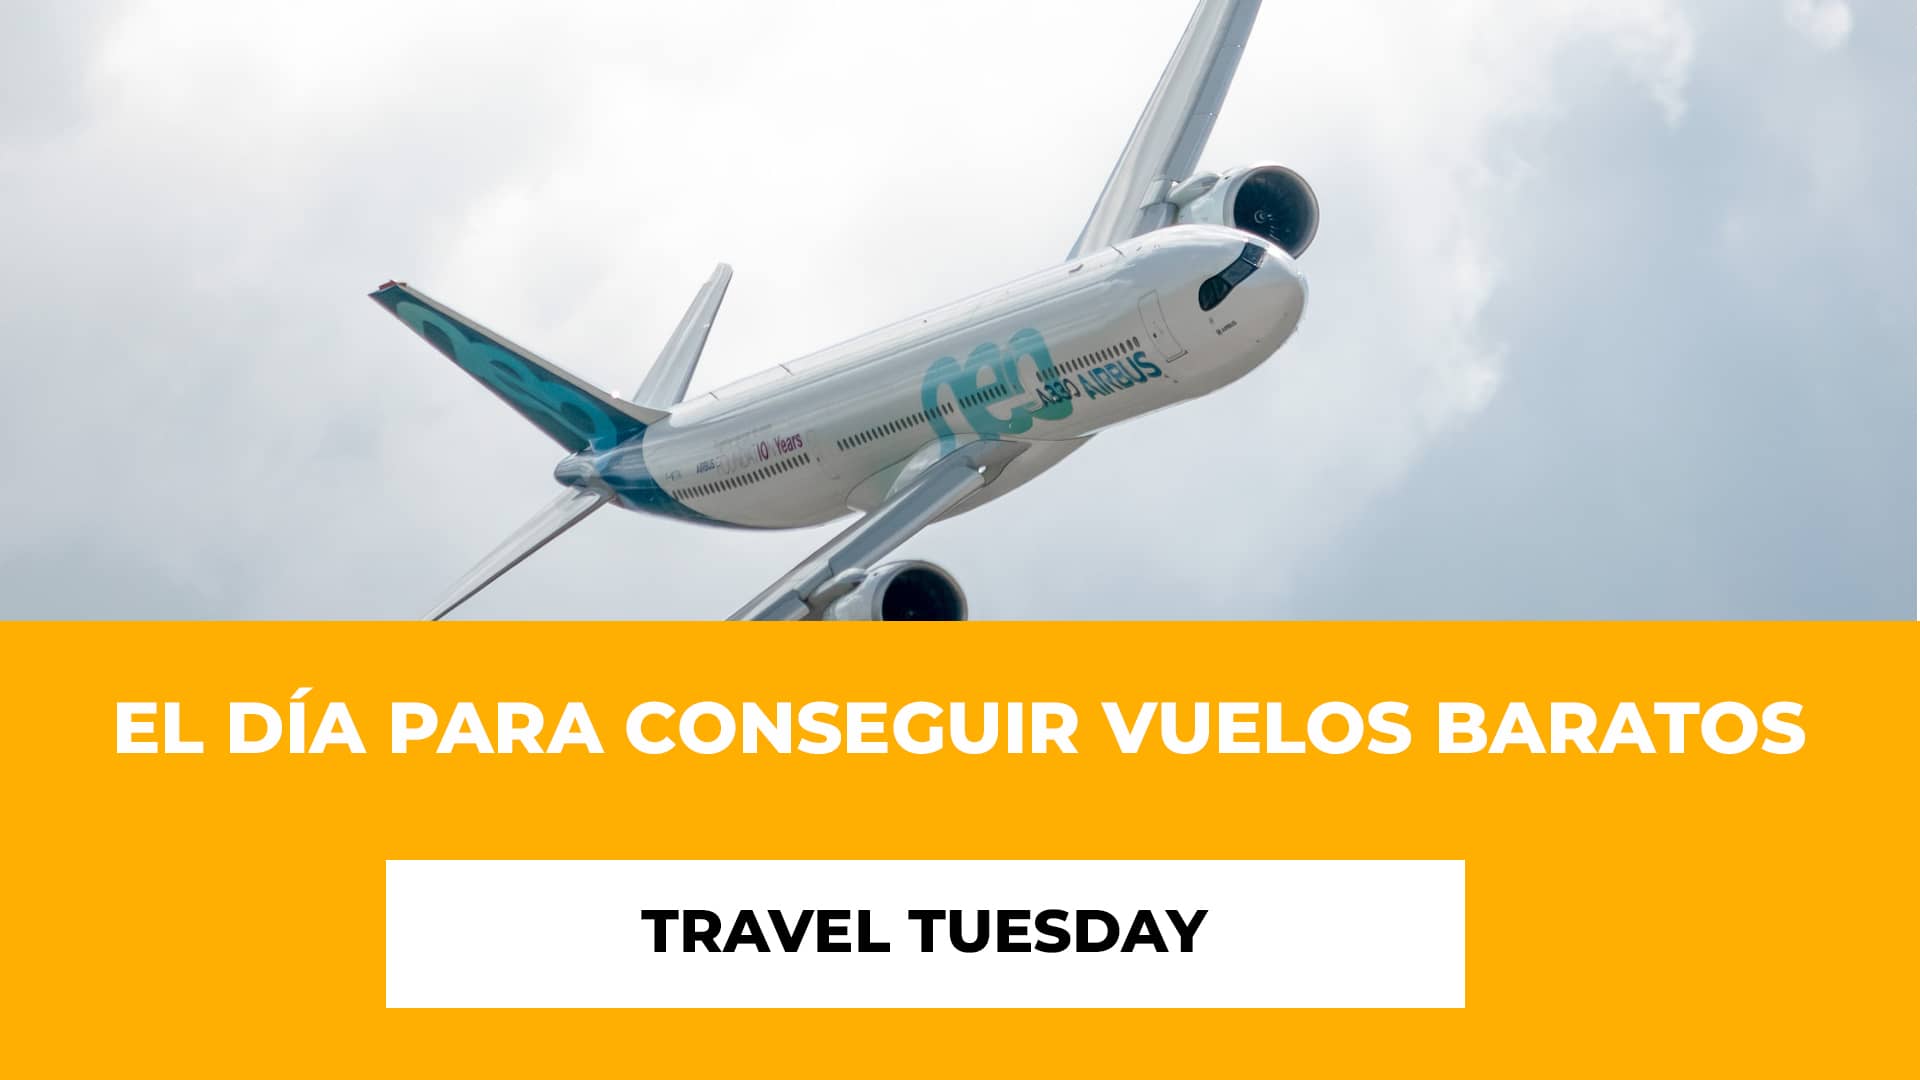 Travel Tuesday: El día para conseguir vuelos baratos - Aerolíneas que se han unido - Consejos para Aprovechar el Travel Tuesday